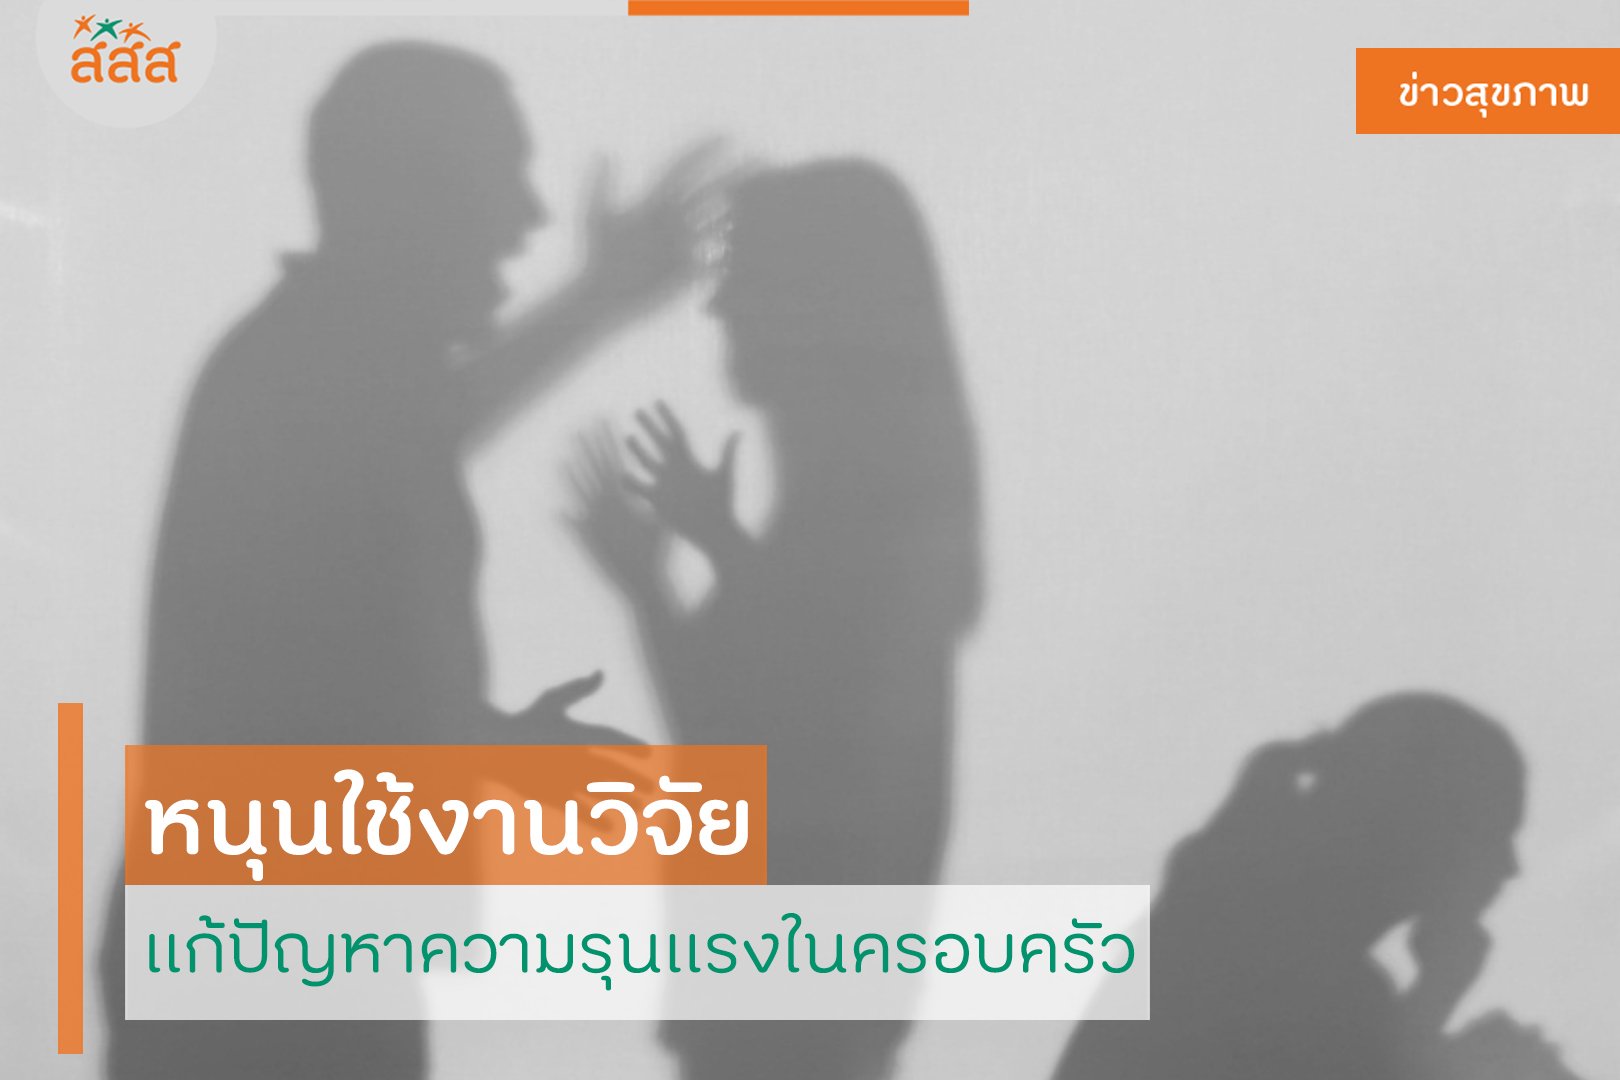 หนุนใช้งานวิจัย แก้ปัญหาความรุนแรงในครอบครัว thaihealth